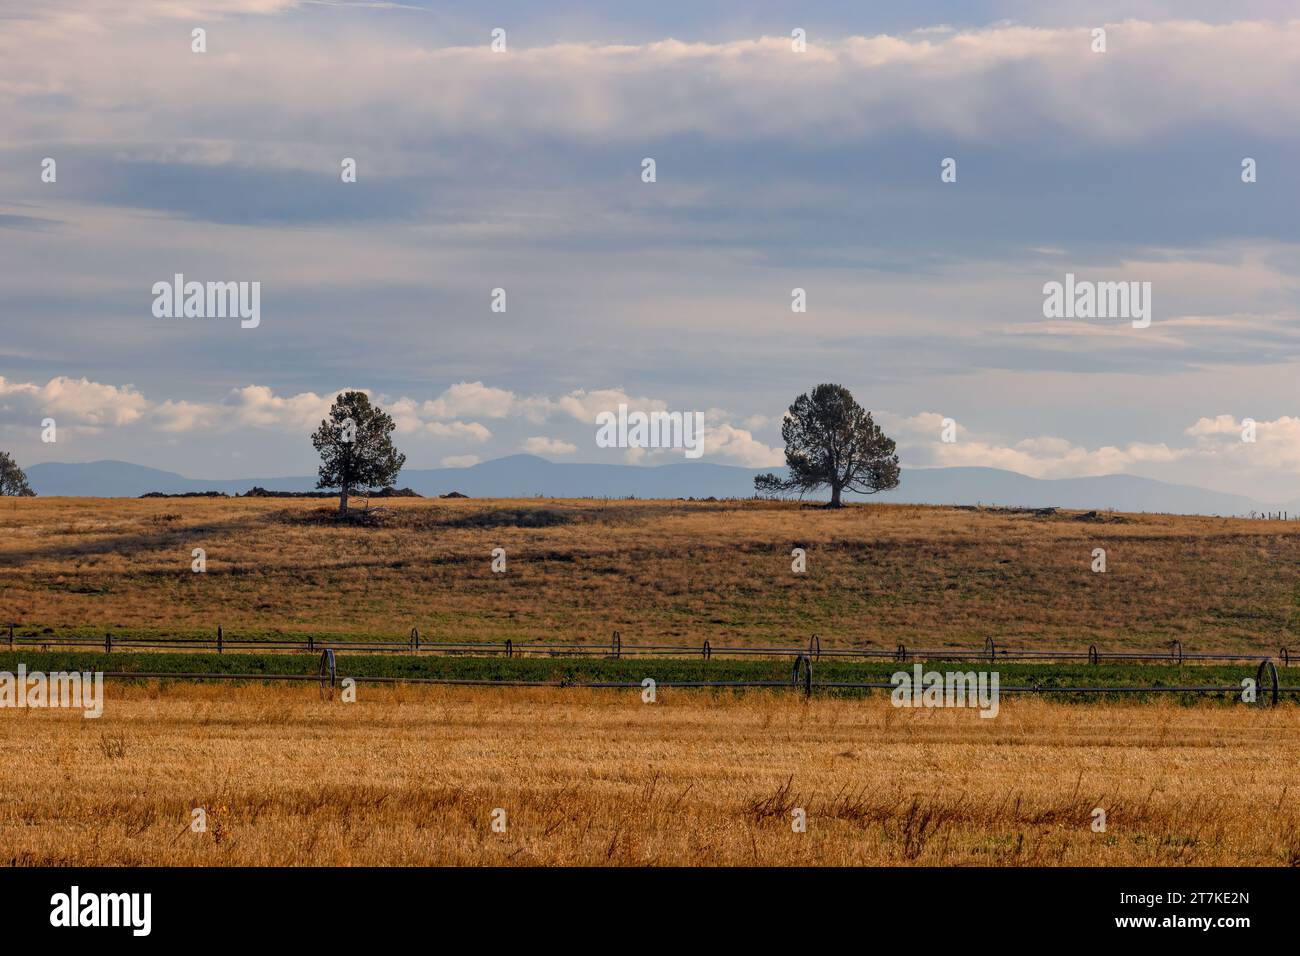 Ackerfelder mit sämtlichem fertig geerntetem Getreide und Luzerne, getrennt durch eine Bewässerungsradlinie, direkt unterhalb eines kleinen Hügels unter bewölktem Himmel. Stockfoto